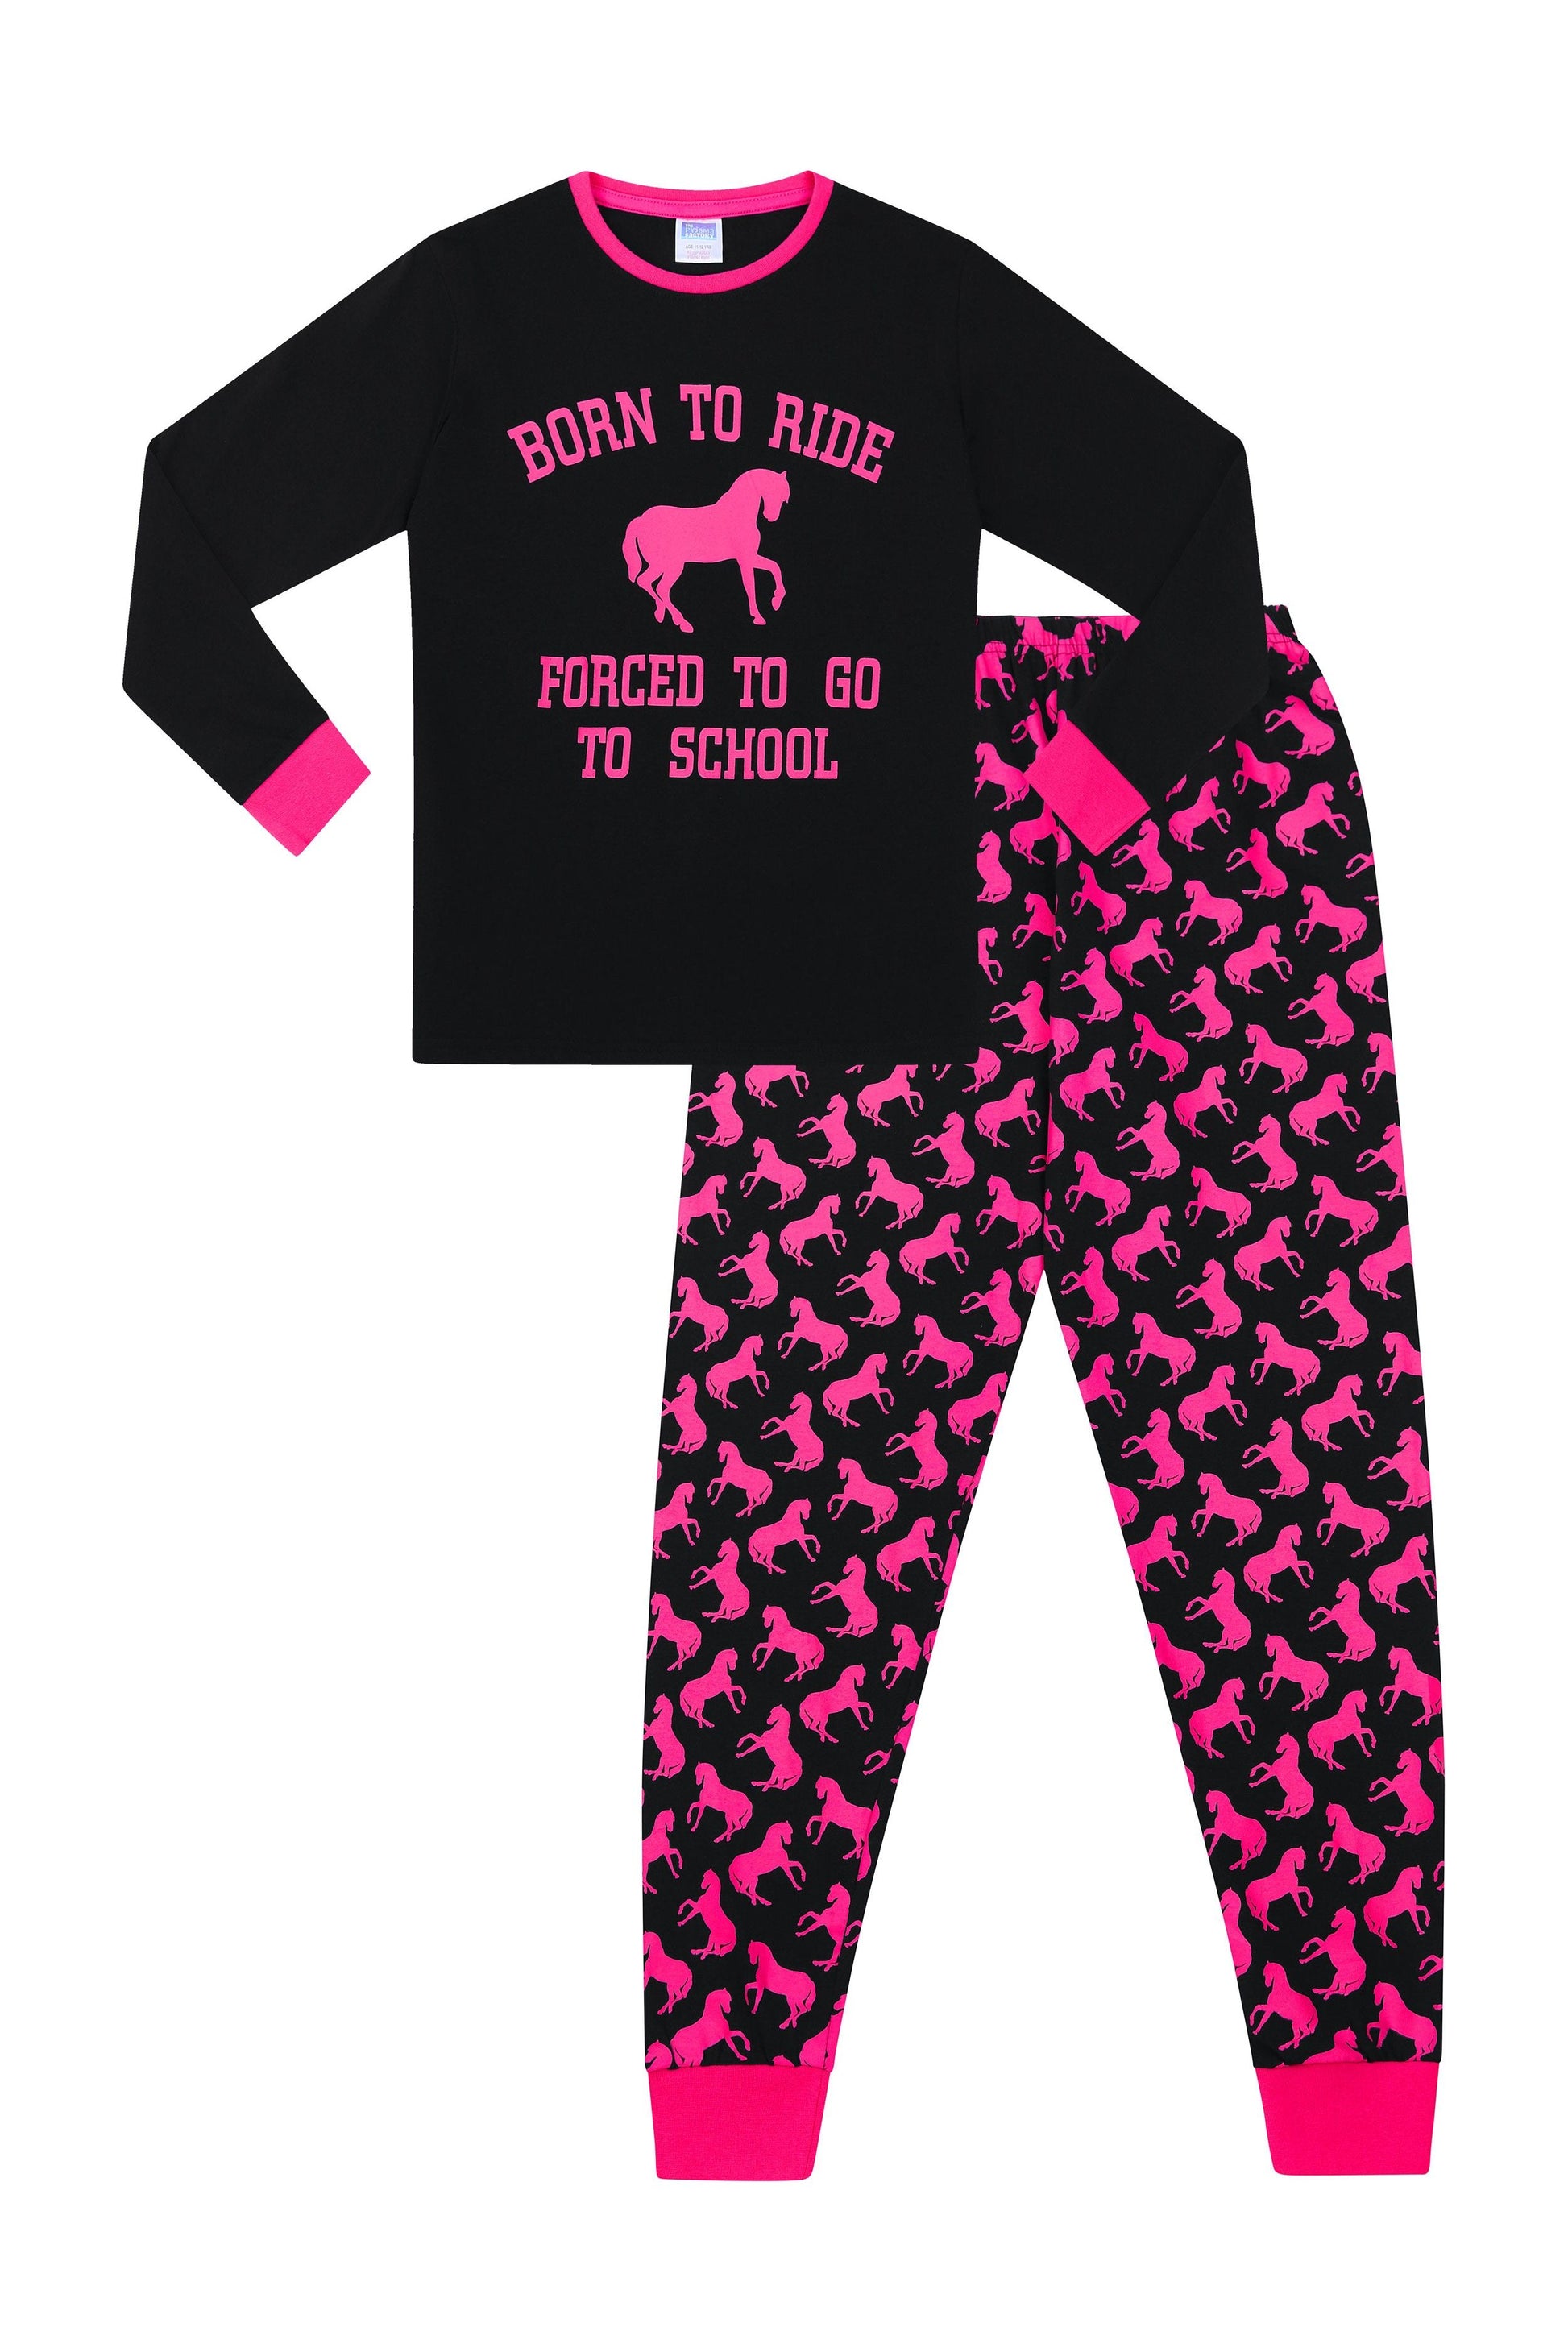 Girls 'Born to ride' Long Pyjamas - Pyjamas.com